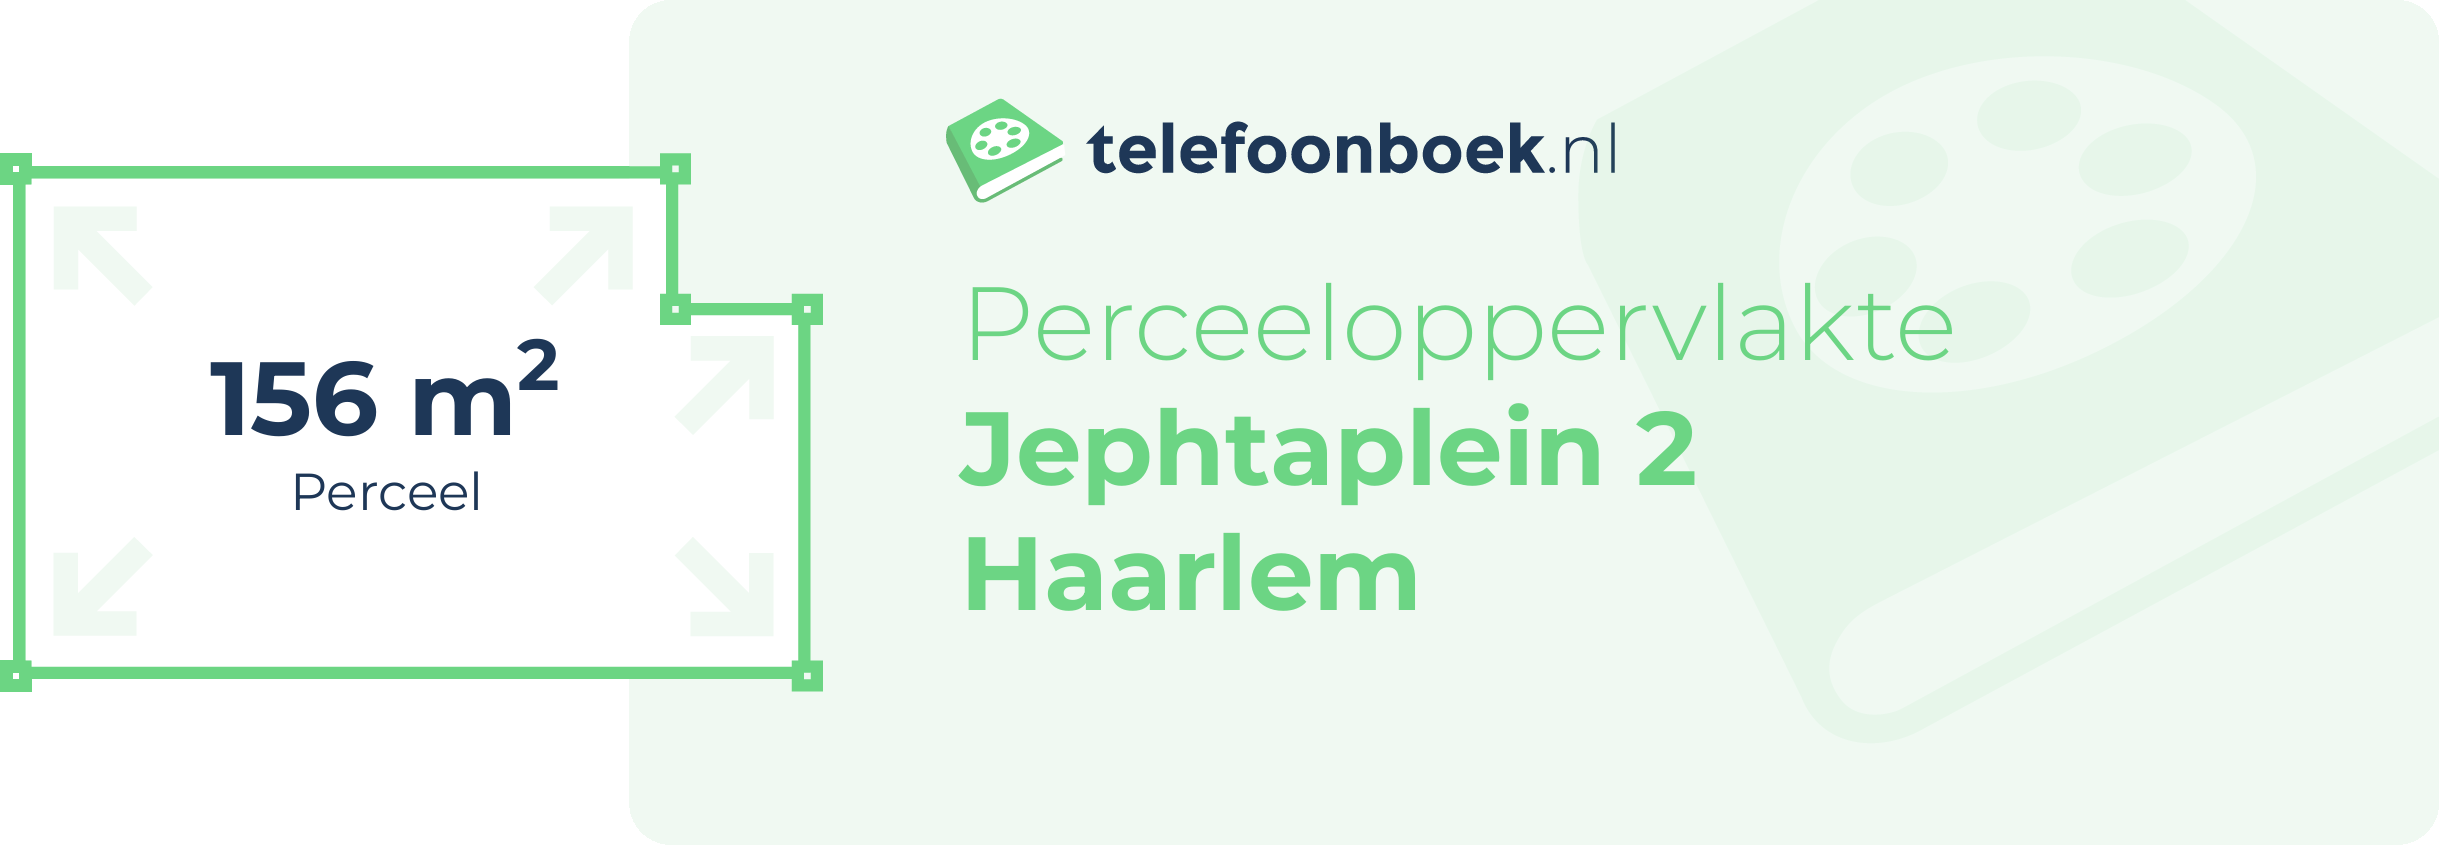 Perceeloppervlakte Jephtaplein 2 Haarlem